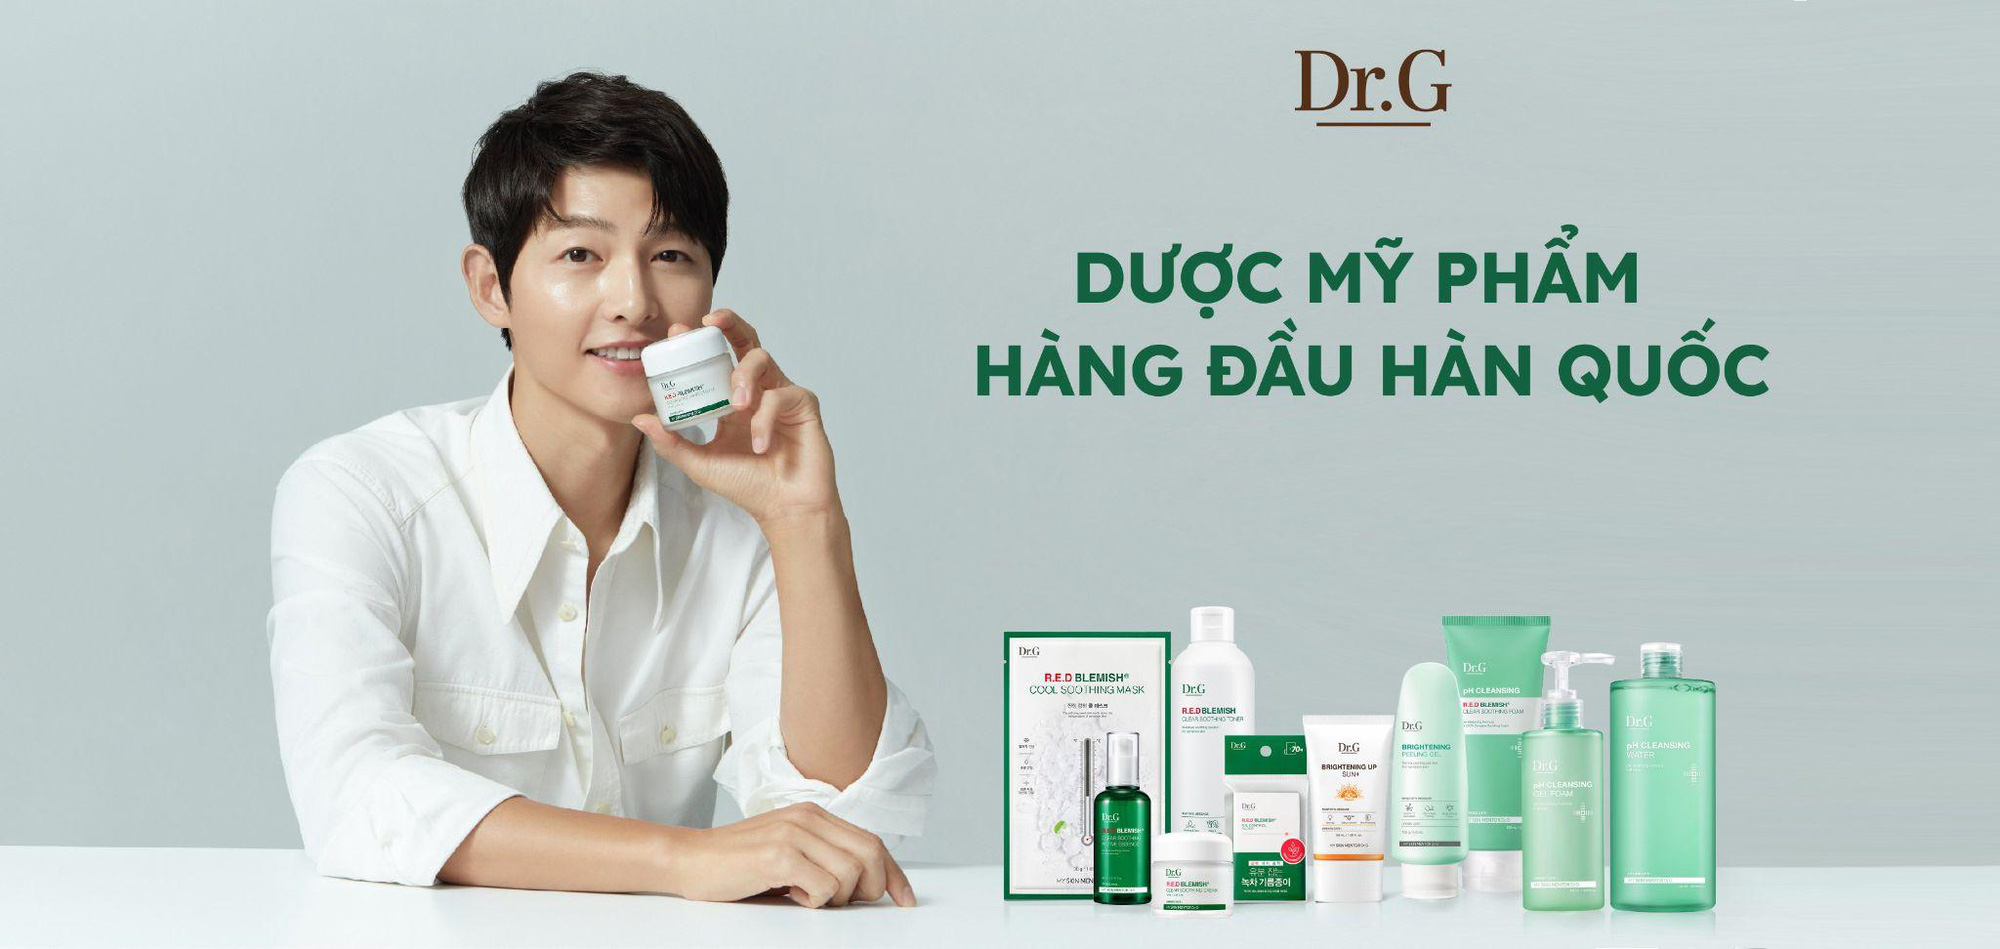 Song Joong Ki đến Việt Nam cùng Dr.G - Dược mỹ phẩm hàng đầu Hàn Quốc - Ảnh 1.